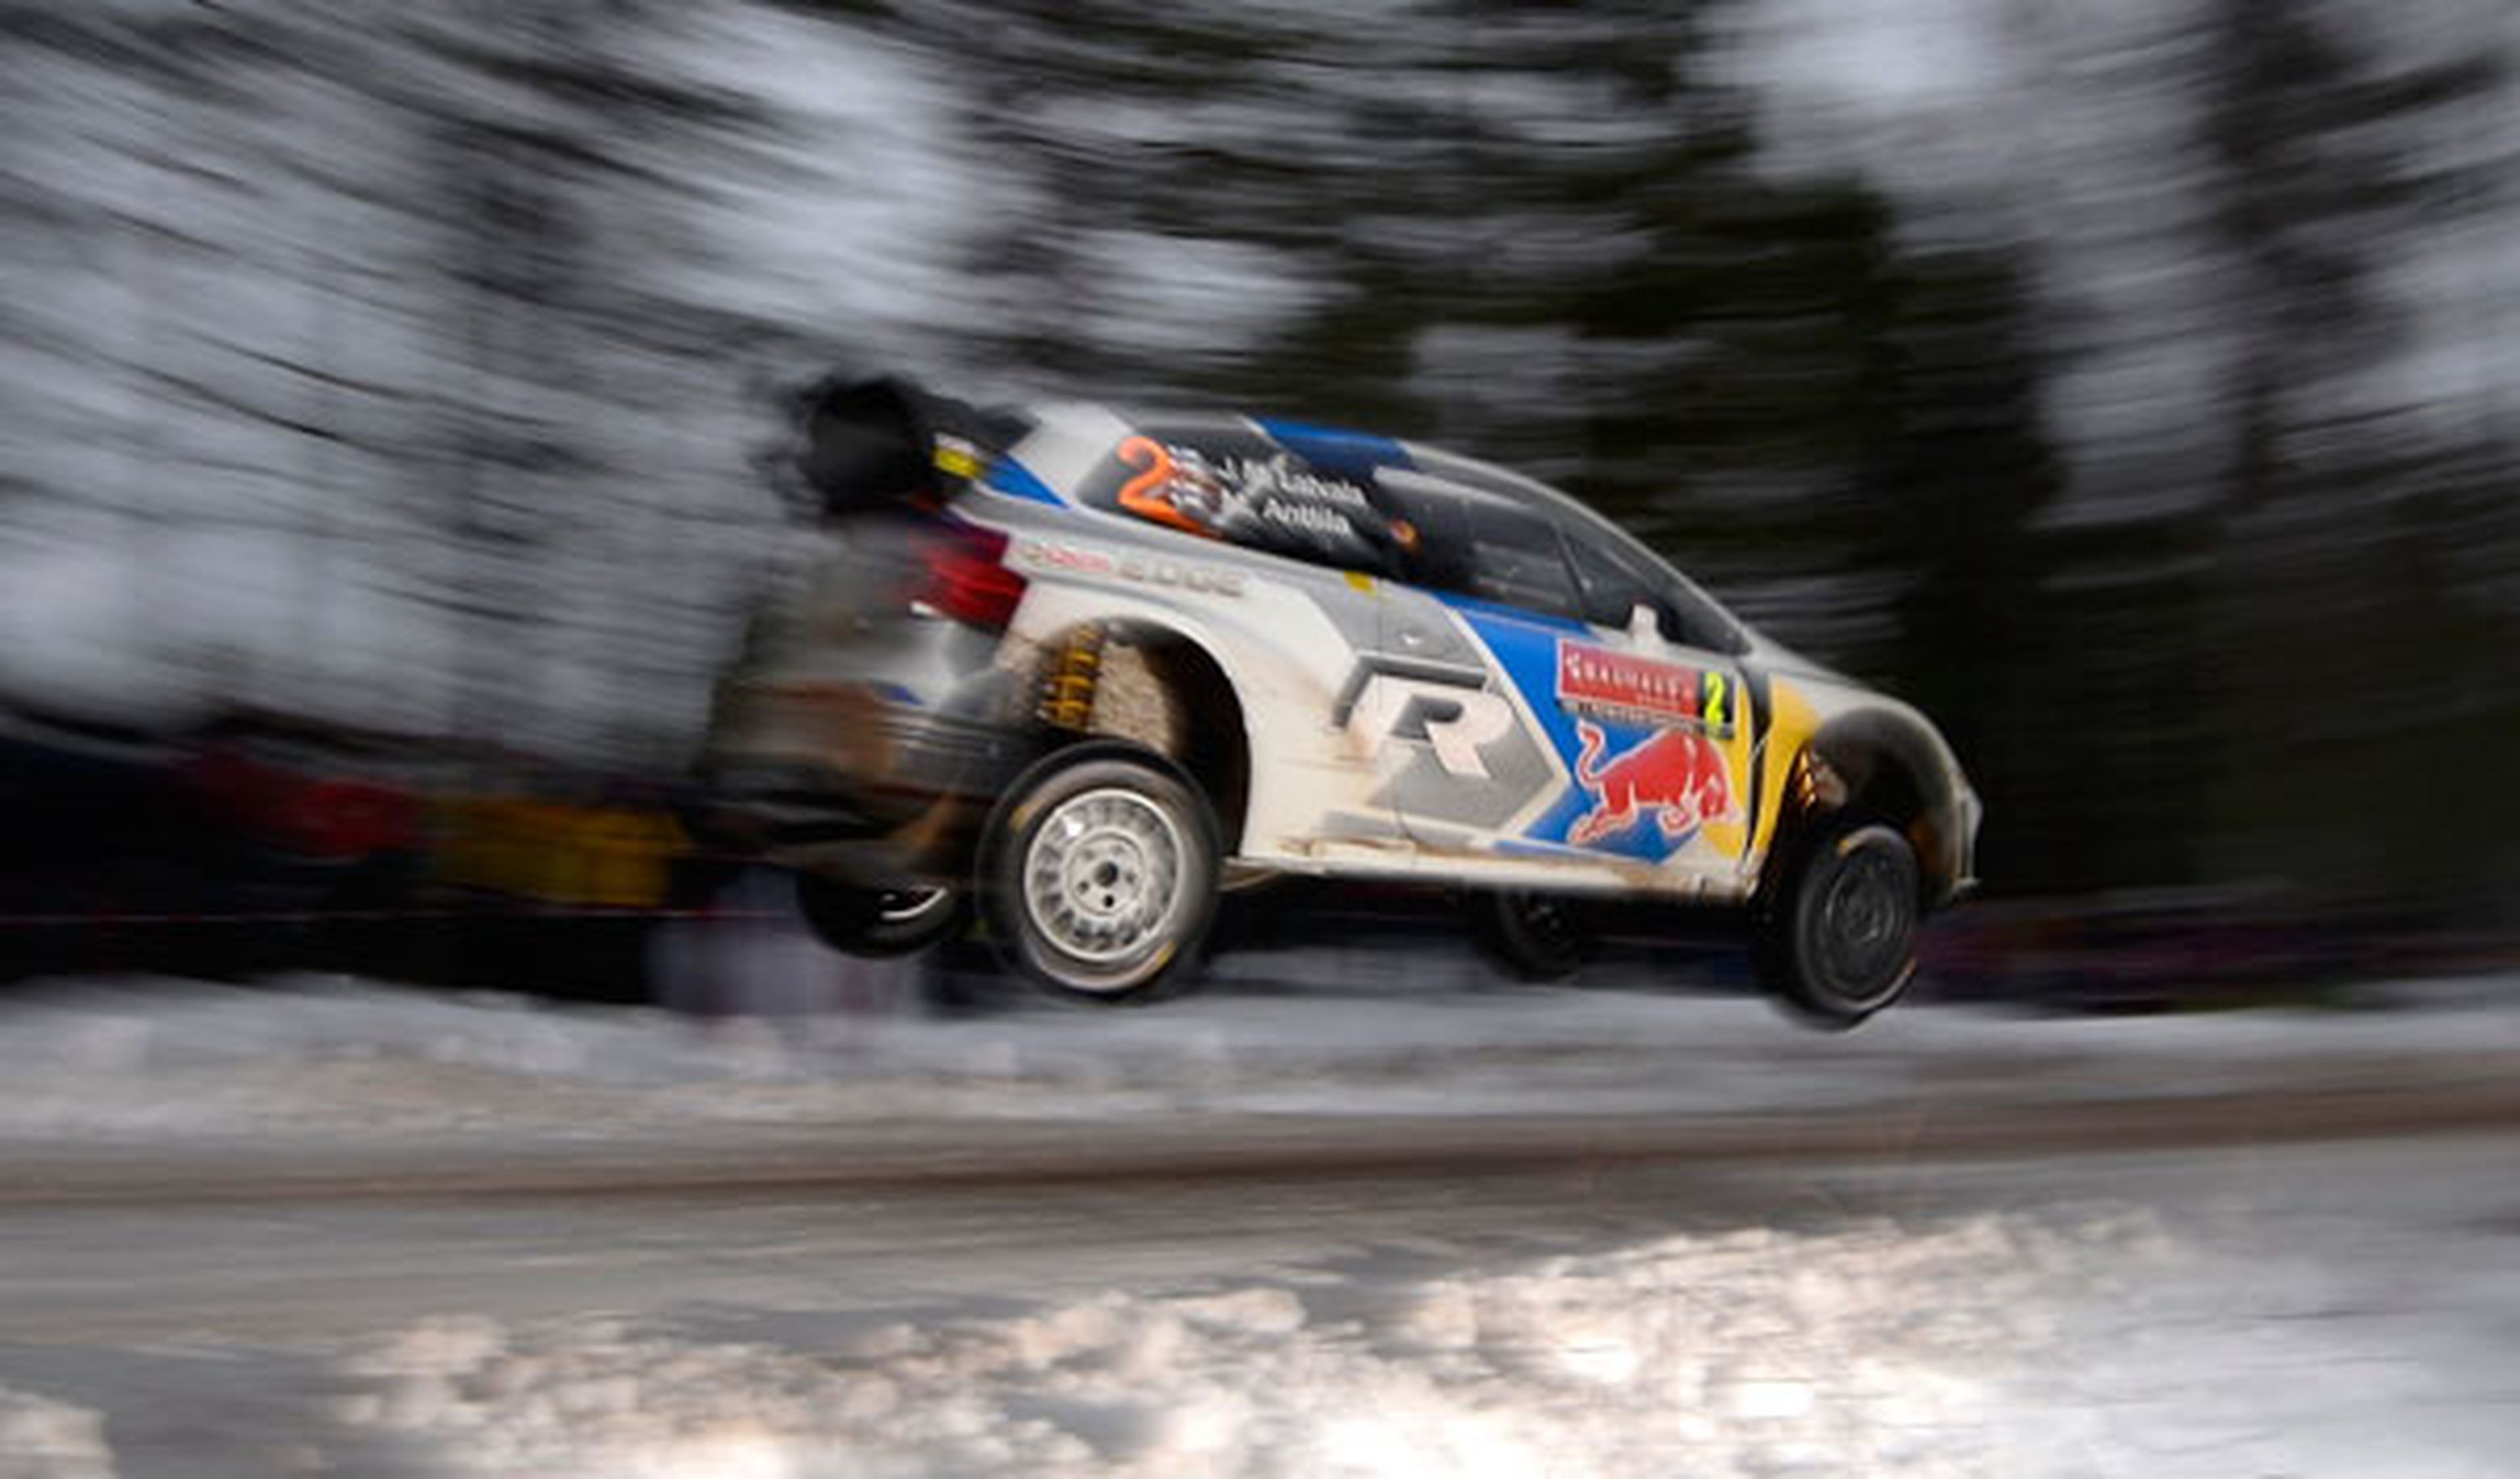 Rally de Suecia 2014, final: Latvala gana en la nieve